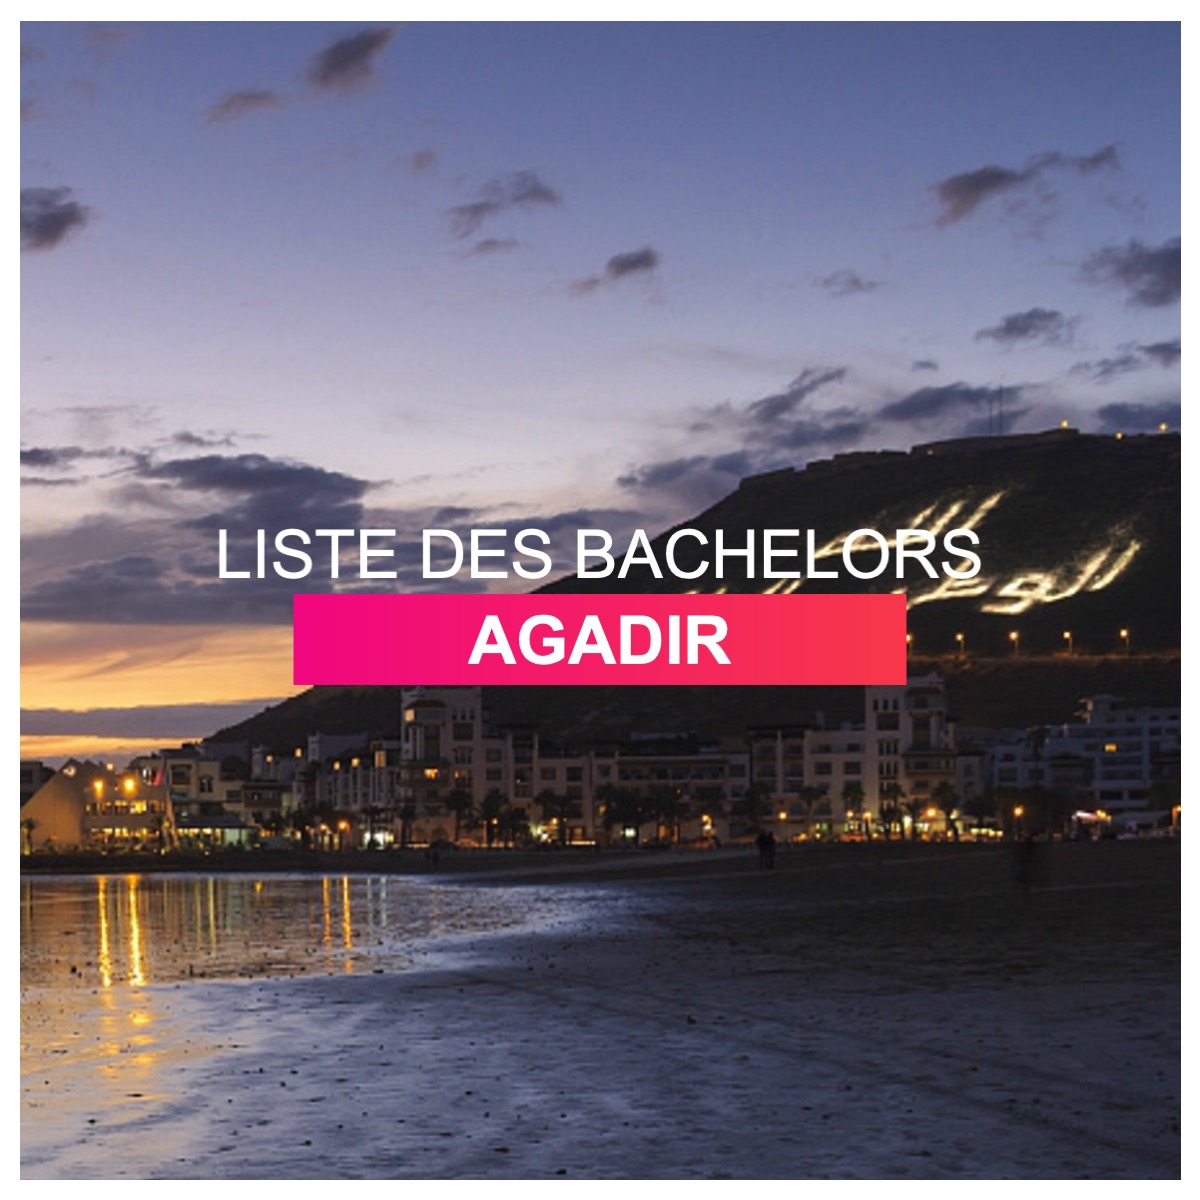 Liste des bachelors Agadir l Dates-concours.ma